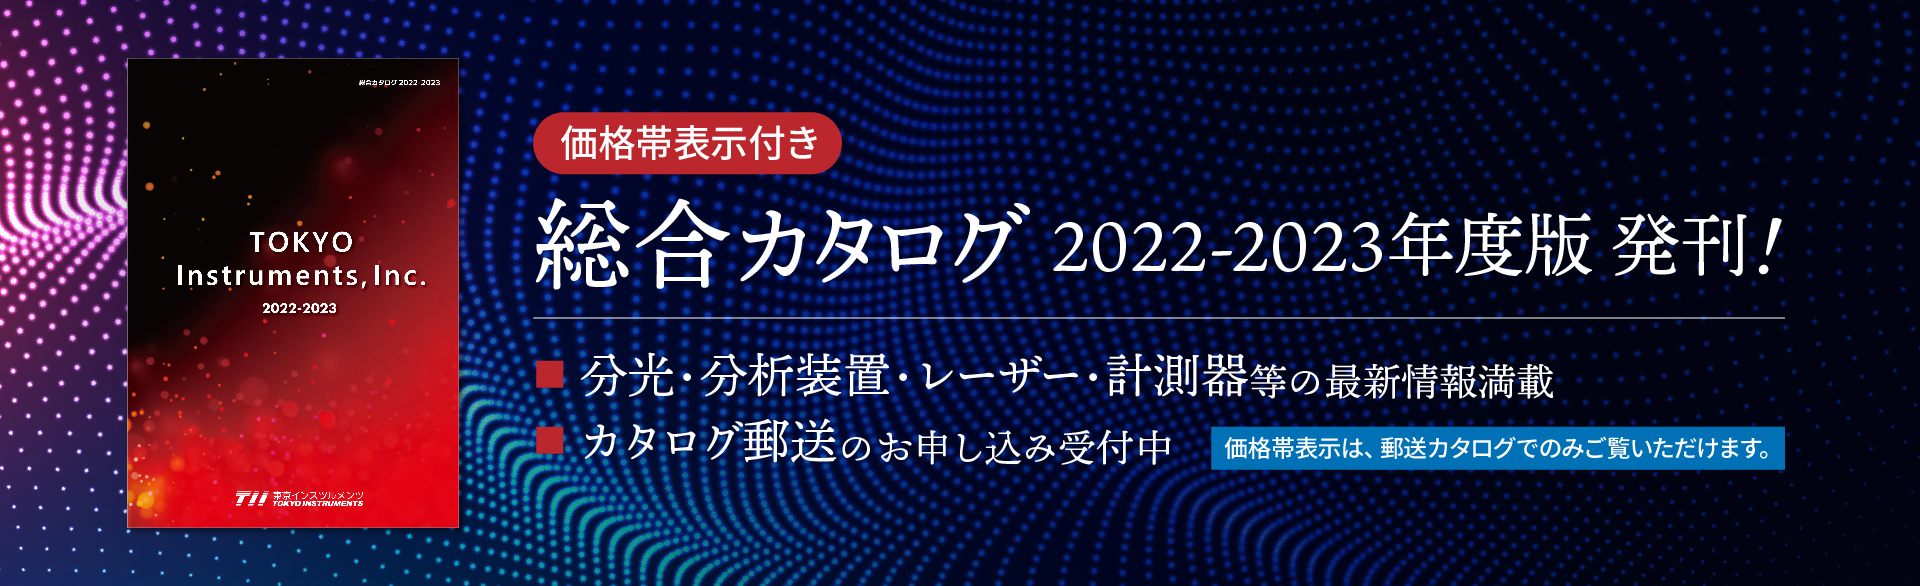 総合カタログ 2022-2023 発刊